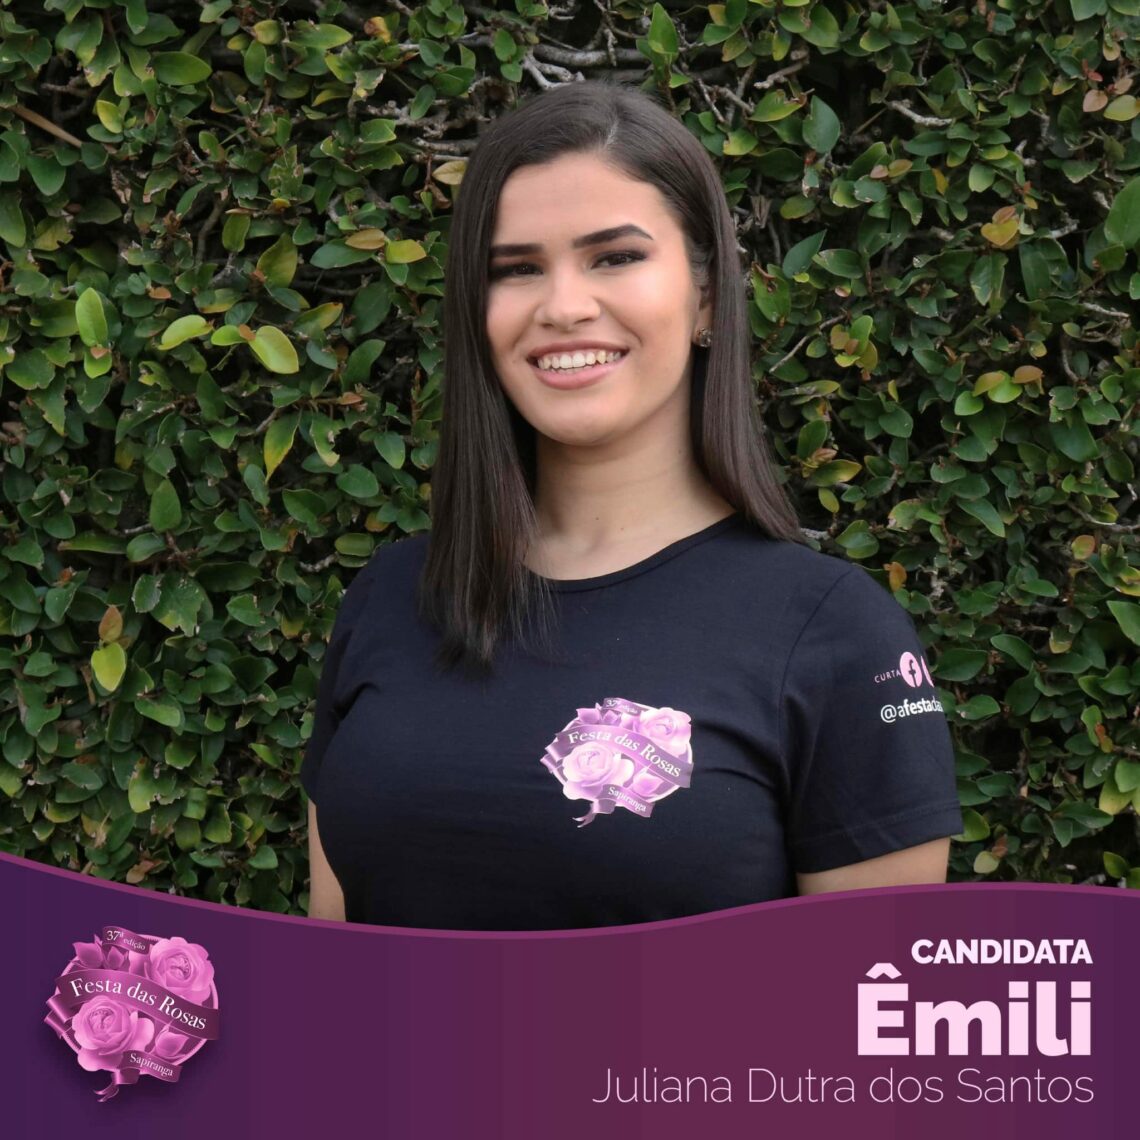 Êmili Juliana Dutra dos Santos 19 anos - Moradora do bairro Oeste